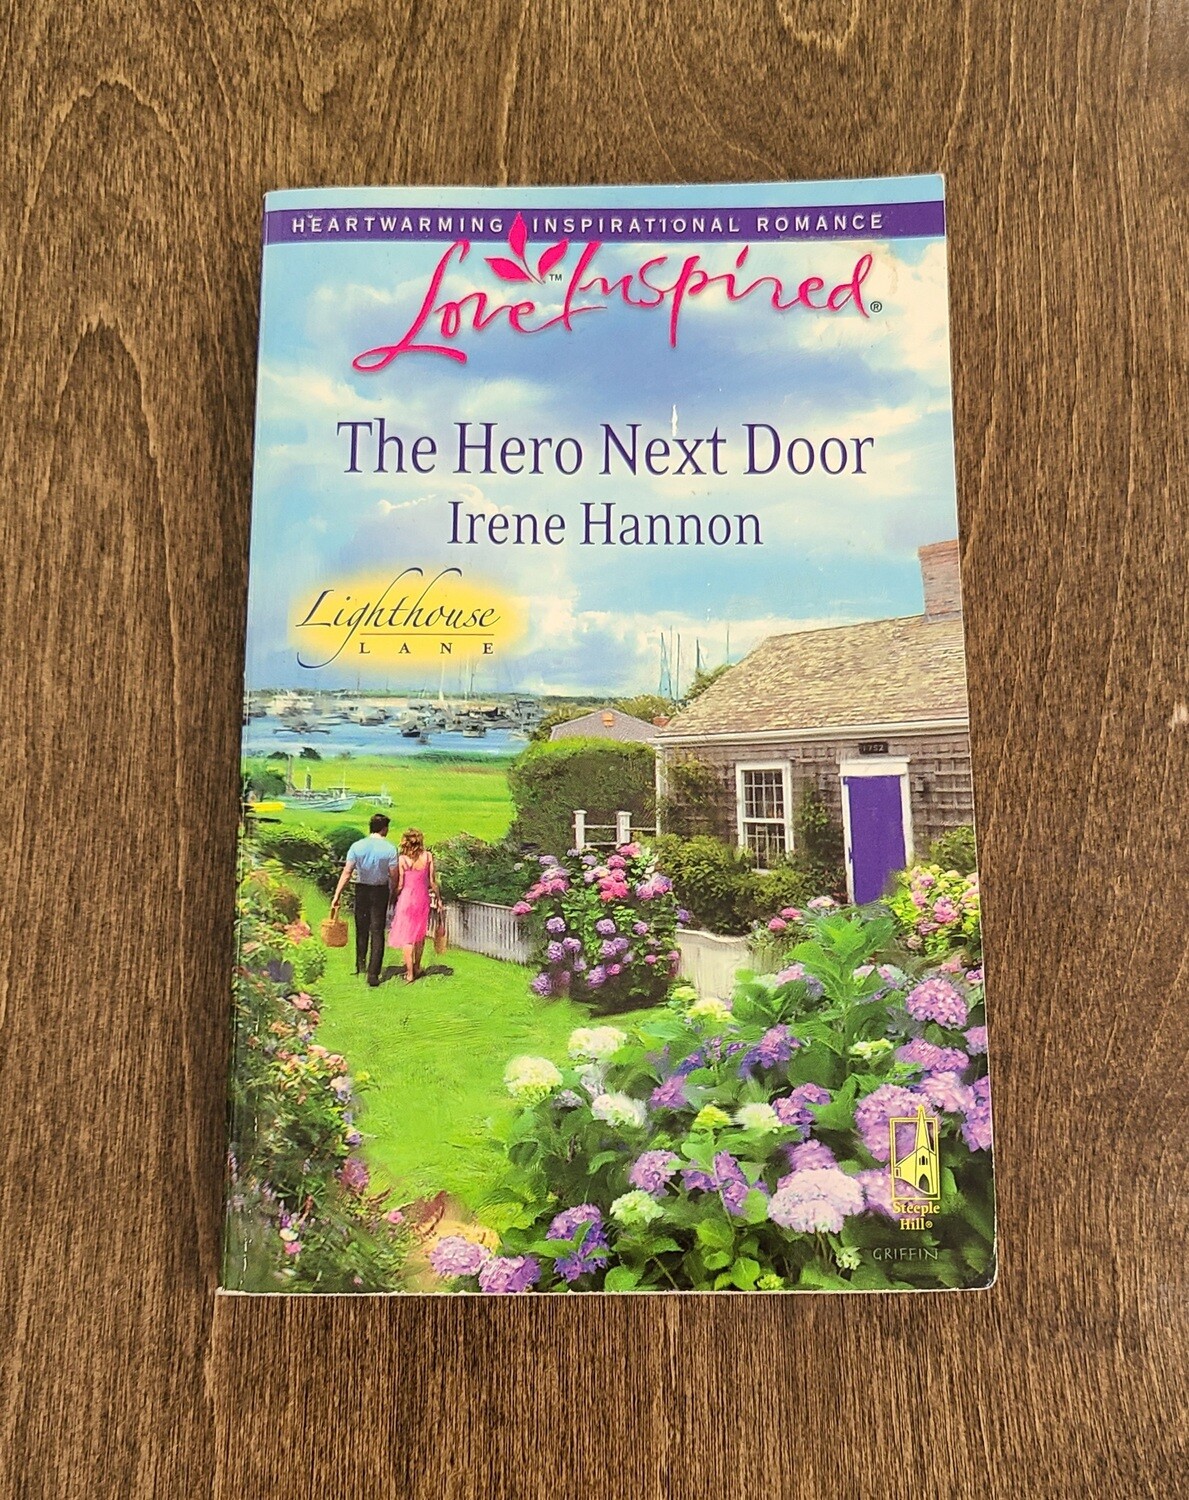 The Hero Next Door by Irene Hannon